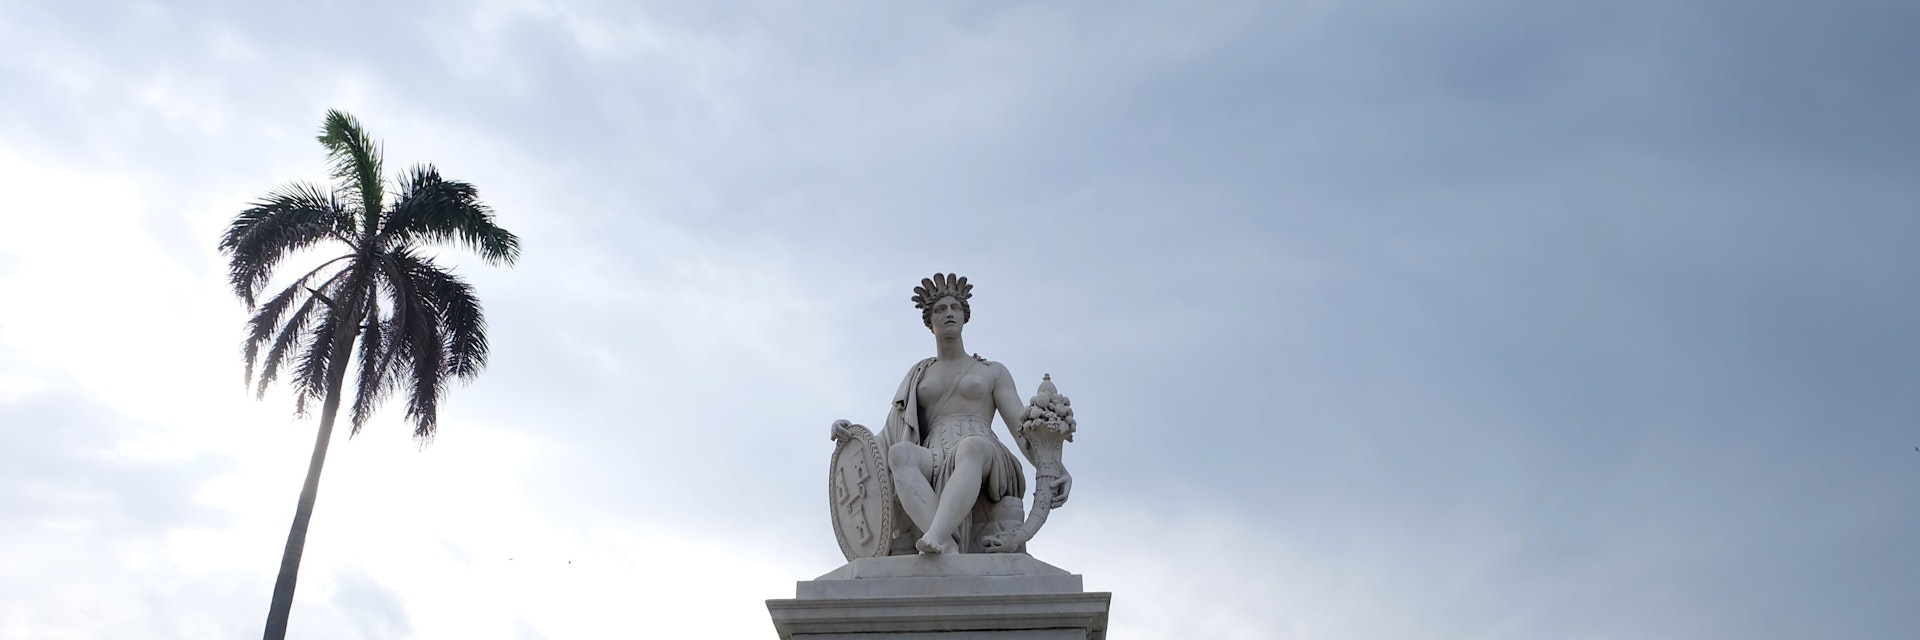 The Fuente de La India was sculpted by Italian artista Giuseppe Gaggini in 1837.